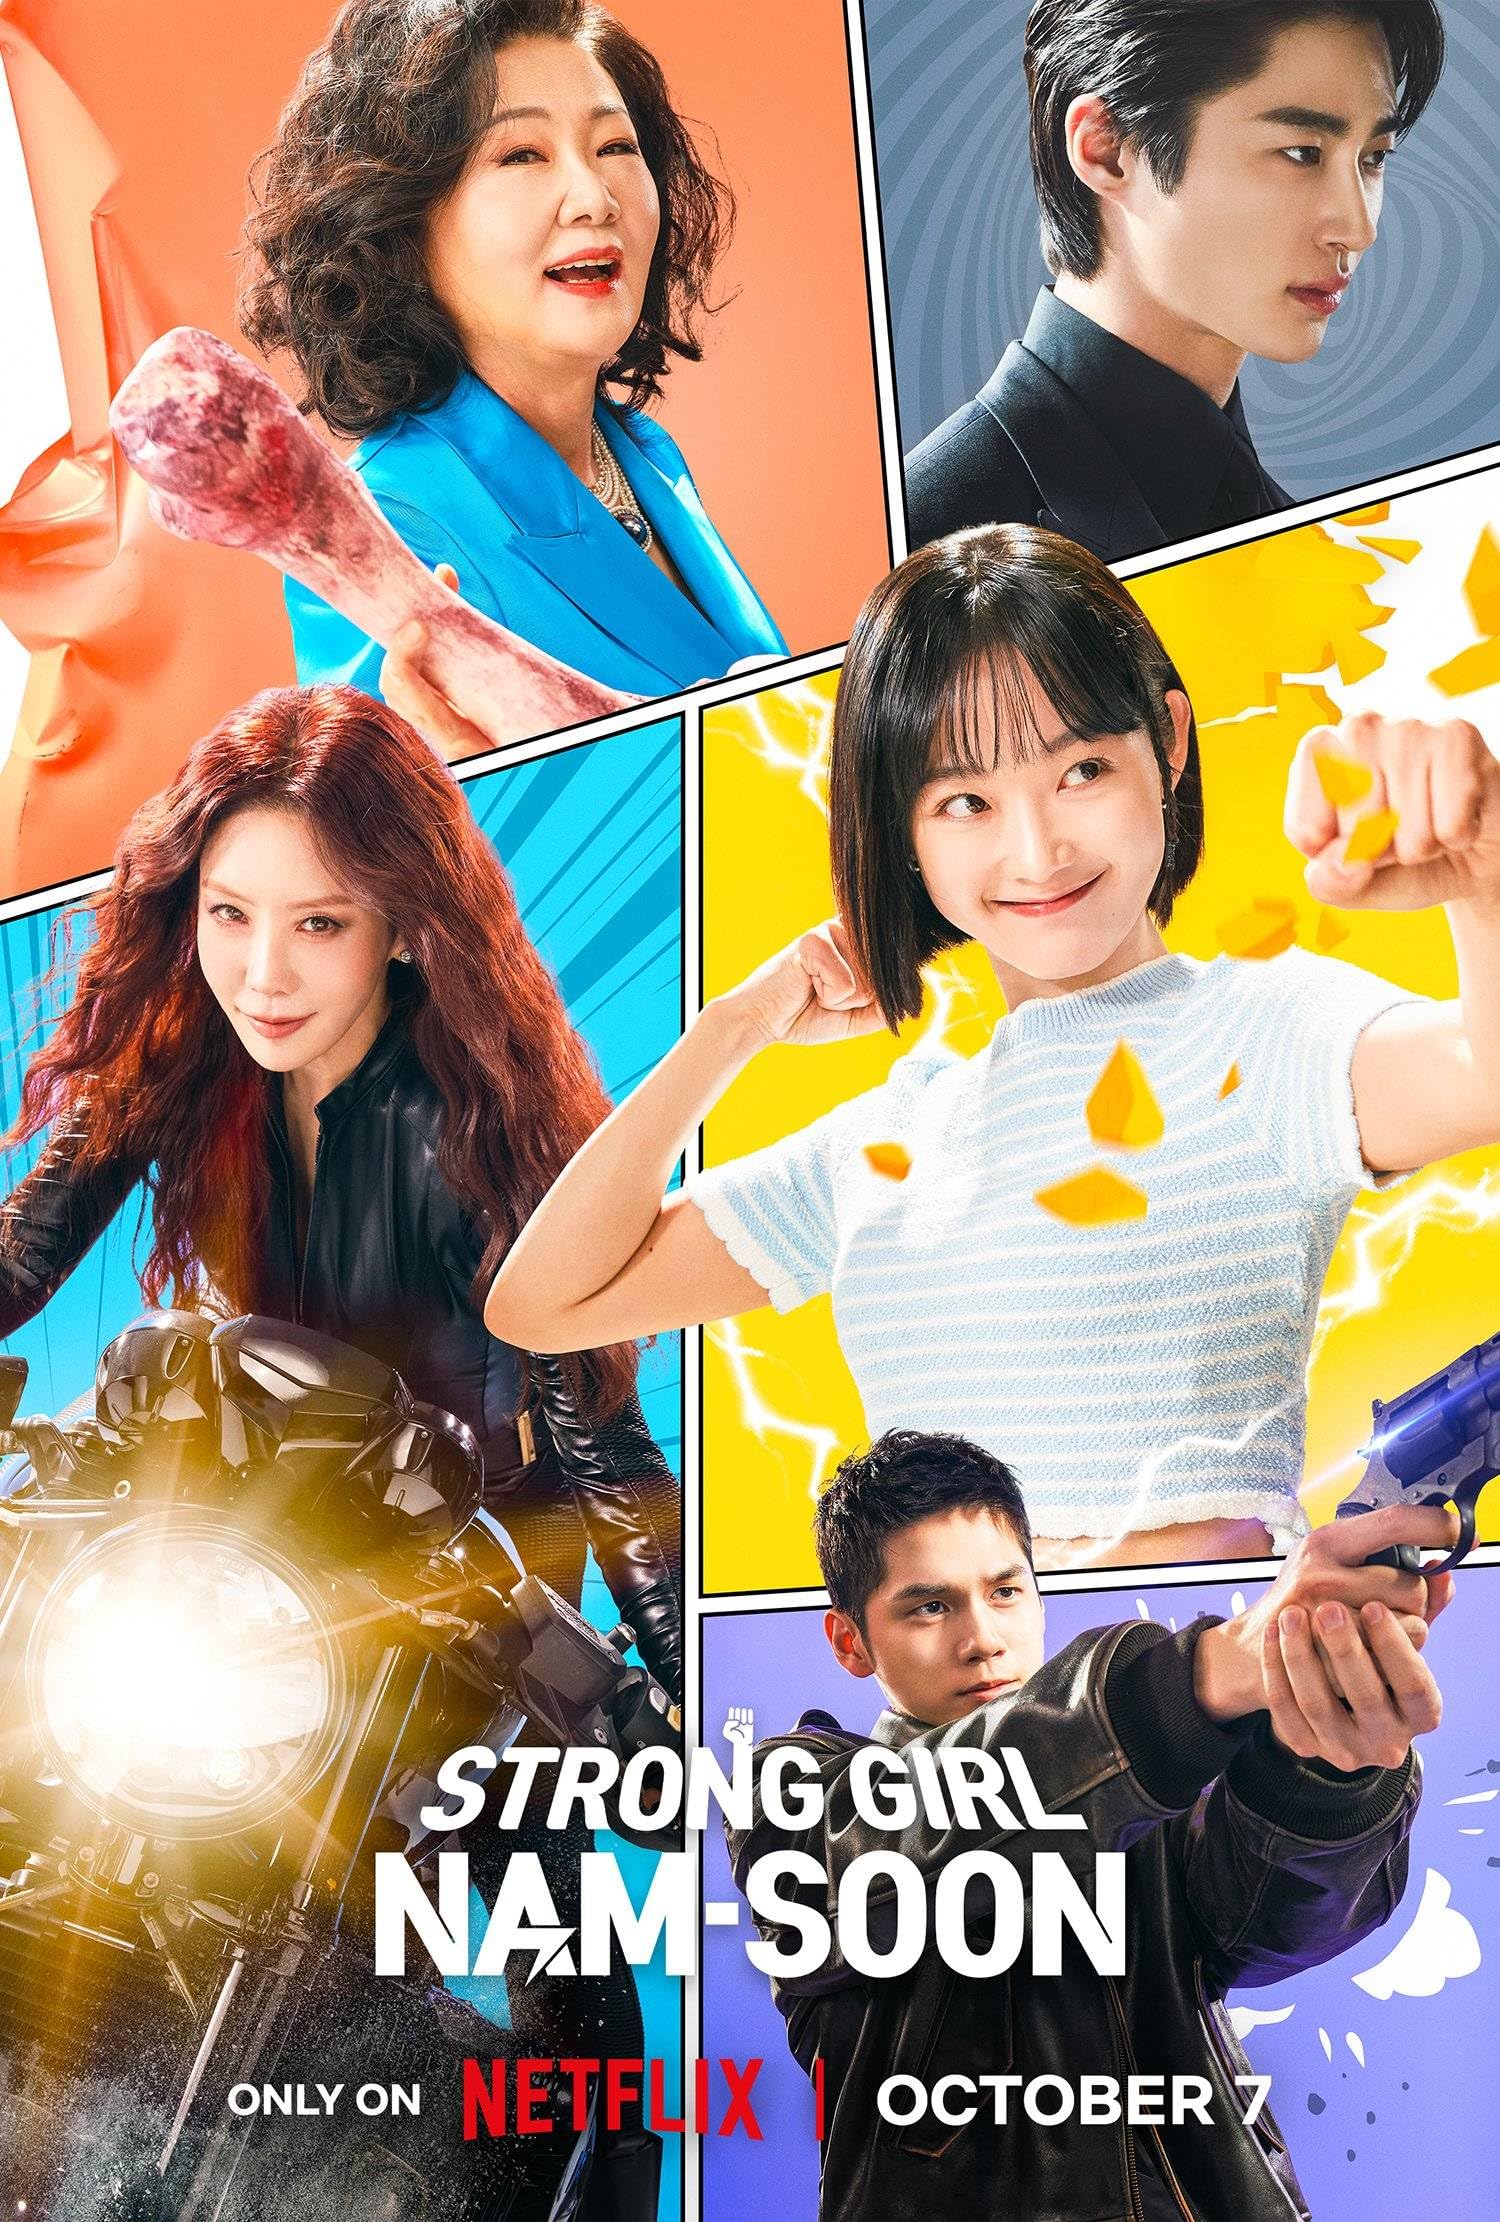 مسلسل الفتاة القوية نام سون Strong Girl Nam-soon الحلقة 16 الاخيرة